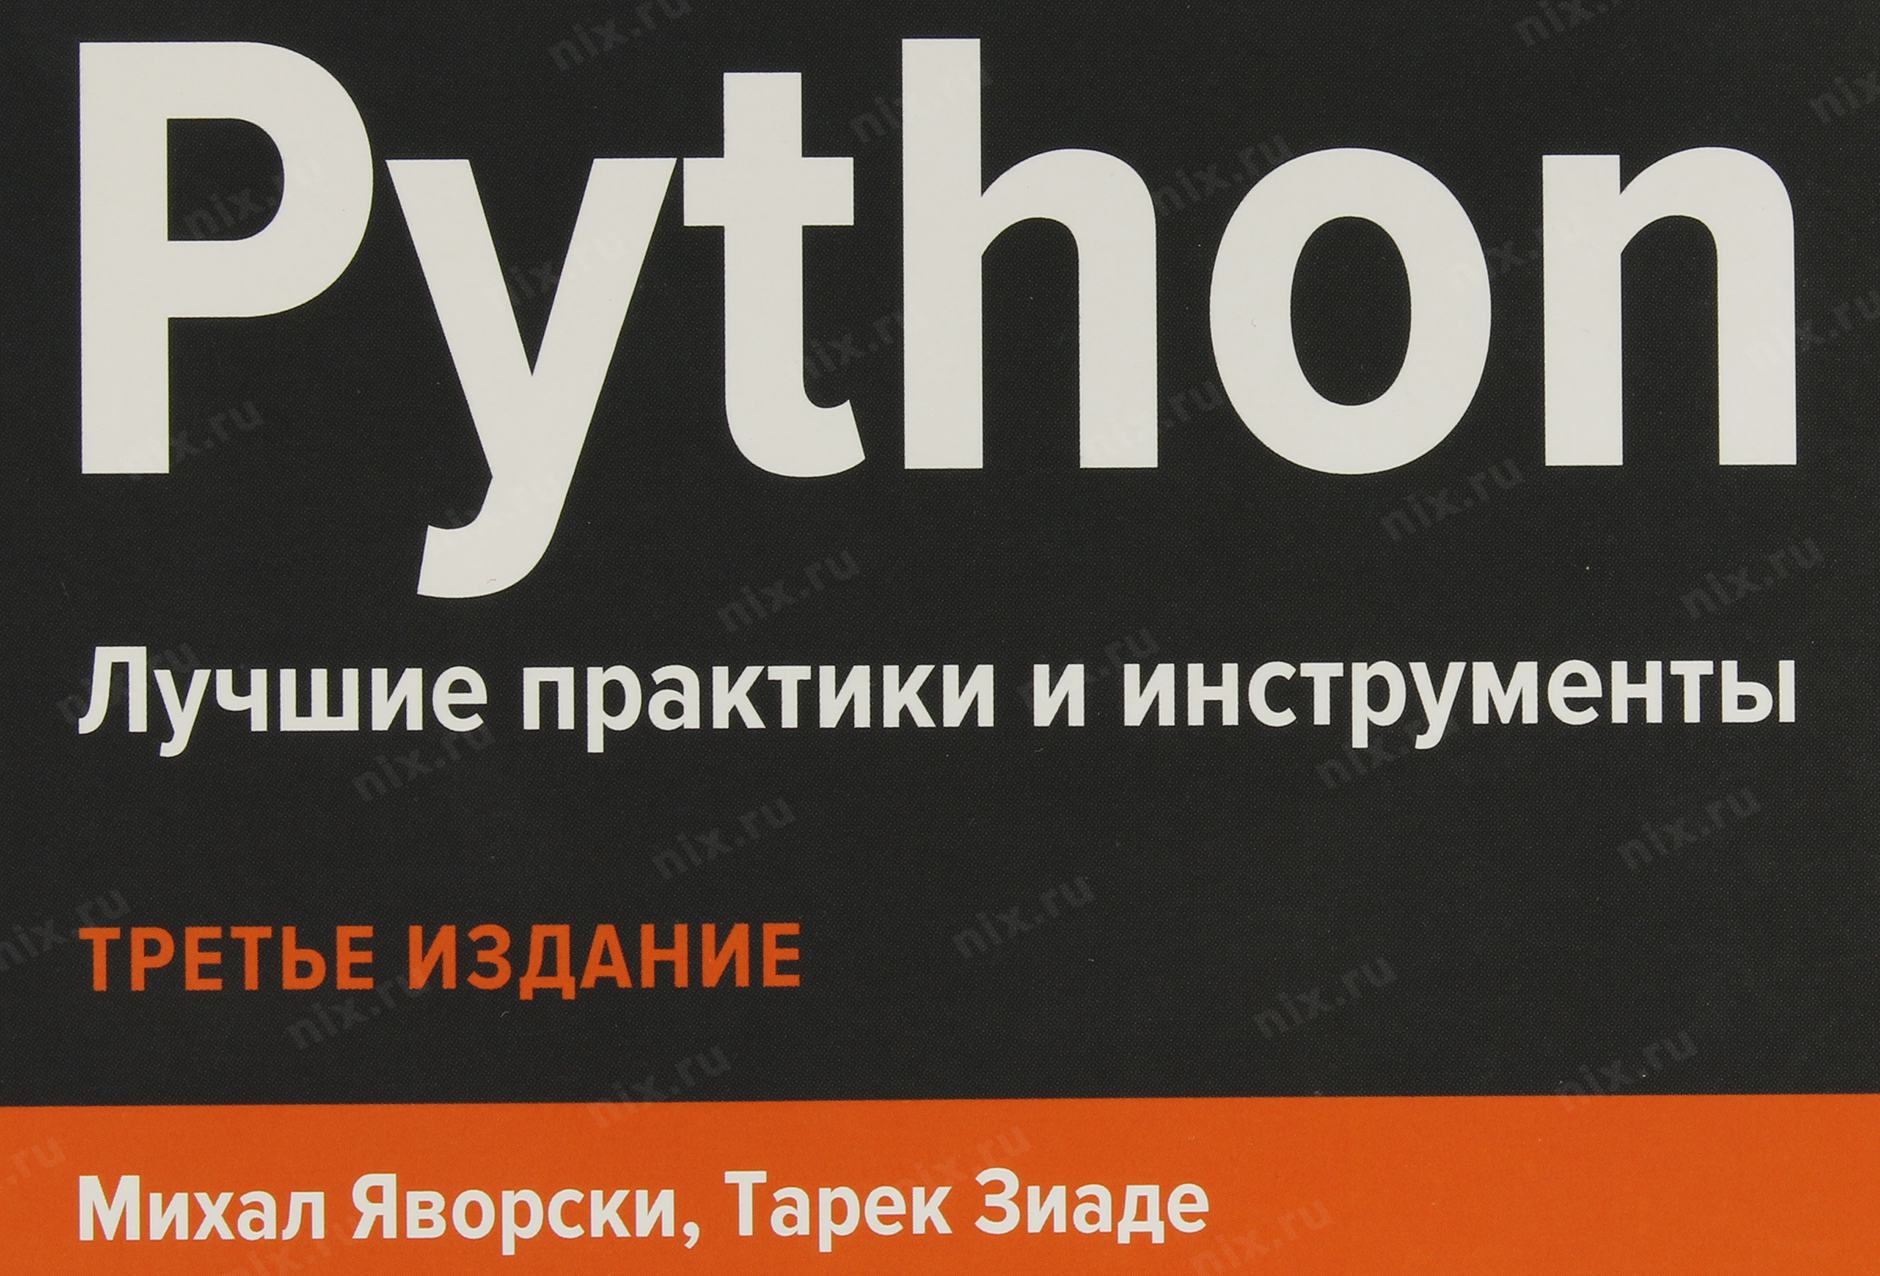 T python 3